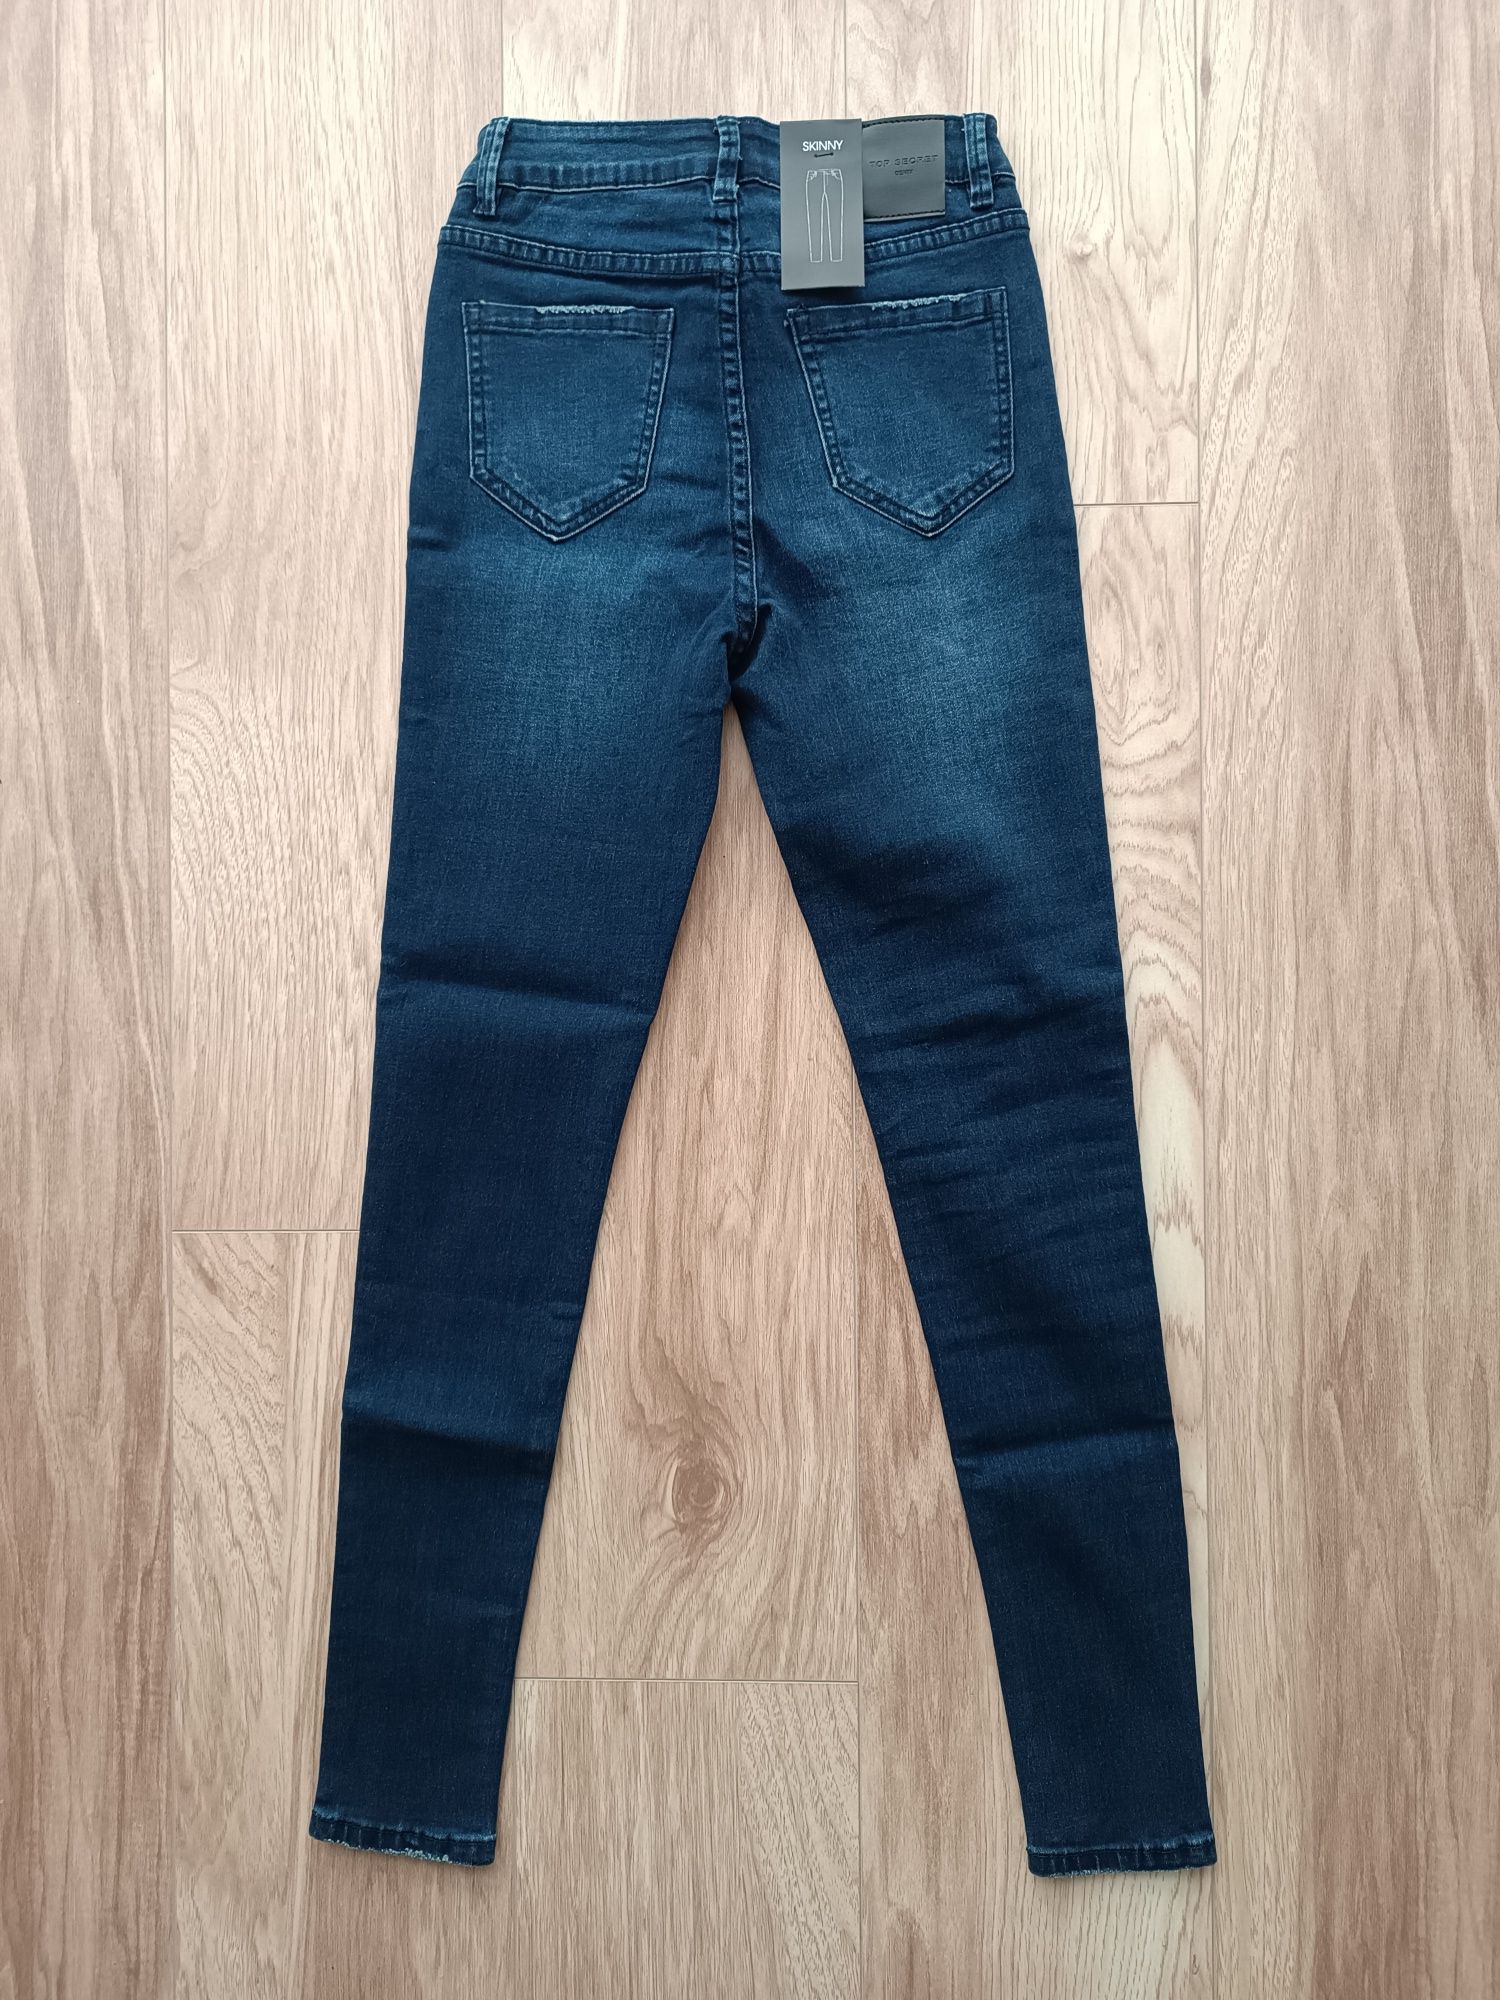 Granatowe jeansy rurki z błyszczącymi kamykami skinny 34 xs